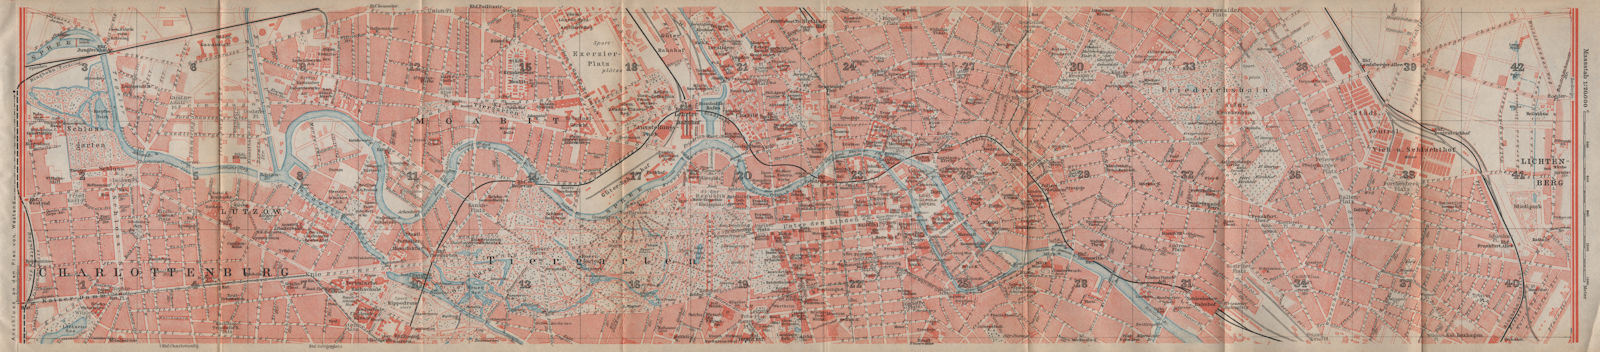 BERLIN CENTRE town city stadtplan. Charlottenburg Moabit Lichtenberg 1923 map